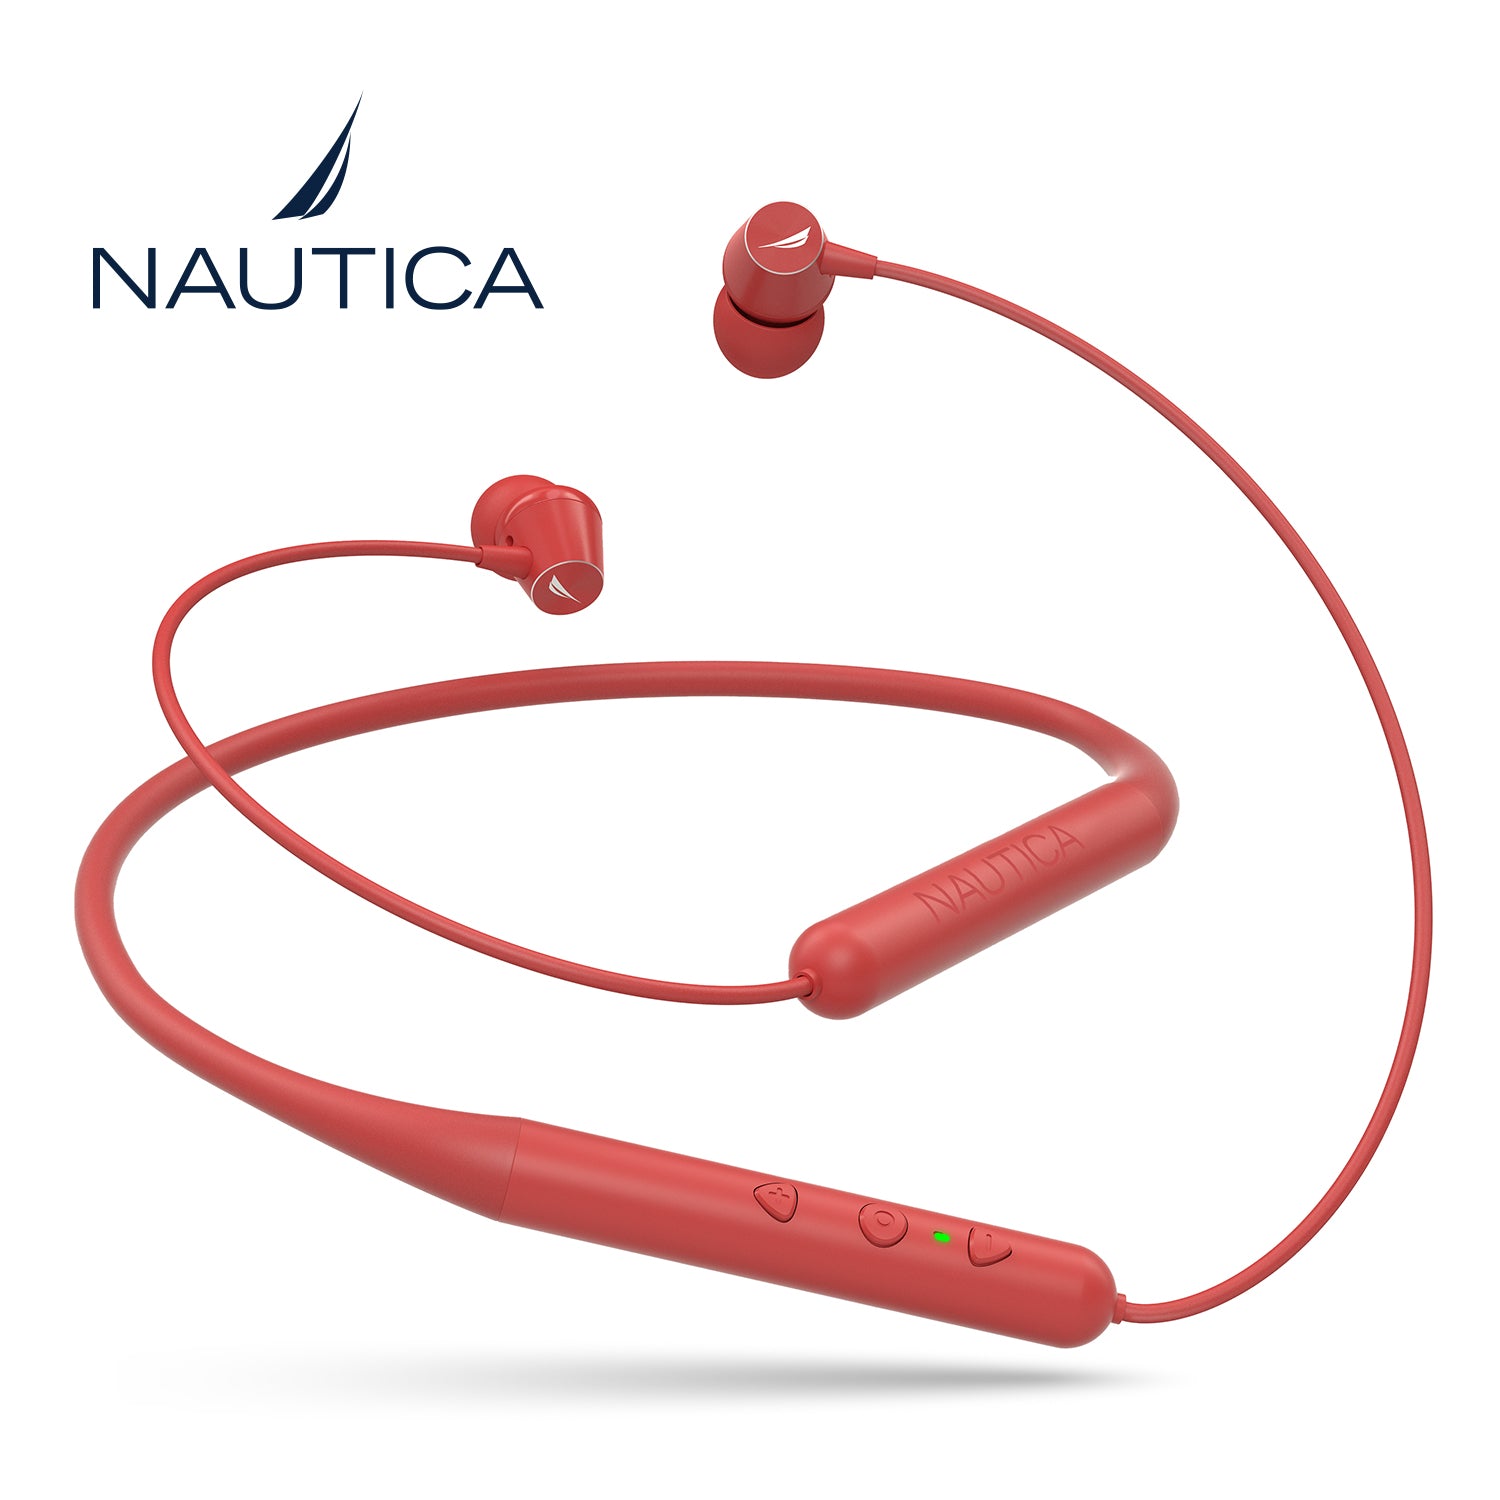 Auriculares Estéreo Bluetooth Nautica B310